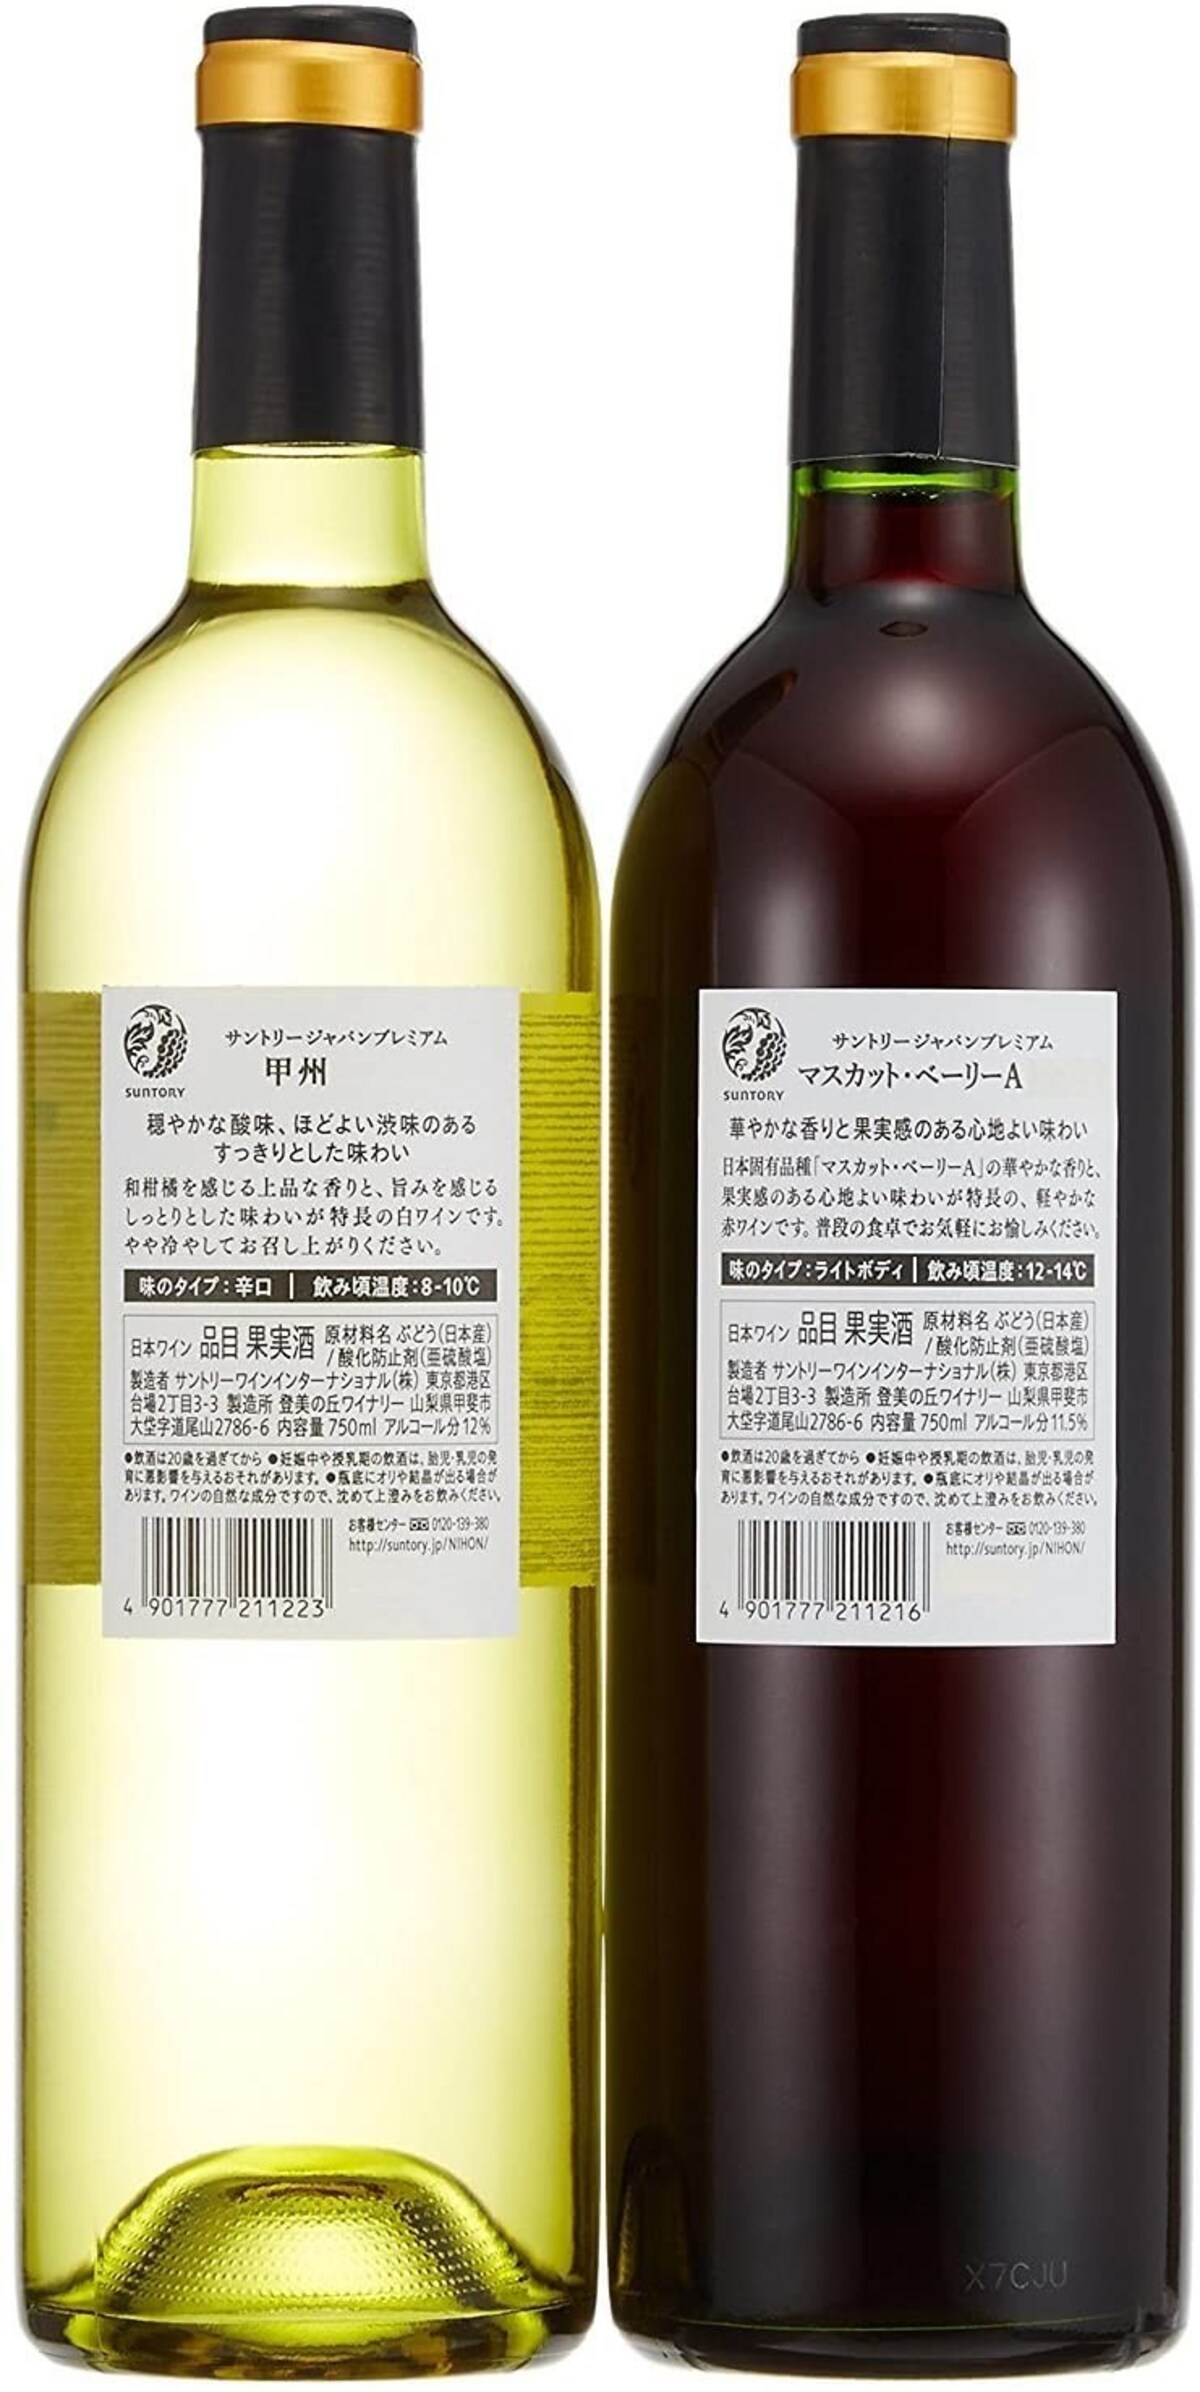  日本ワイン ジャパンプレミアム紅白2種画像3 